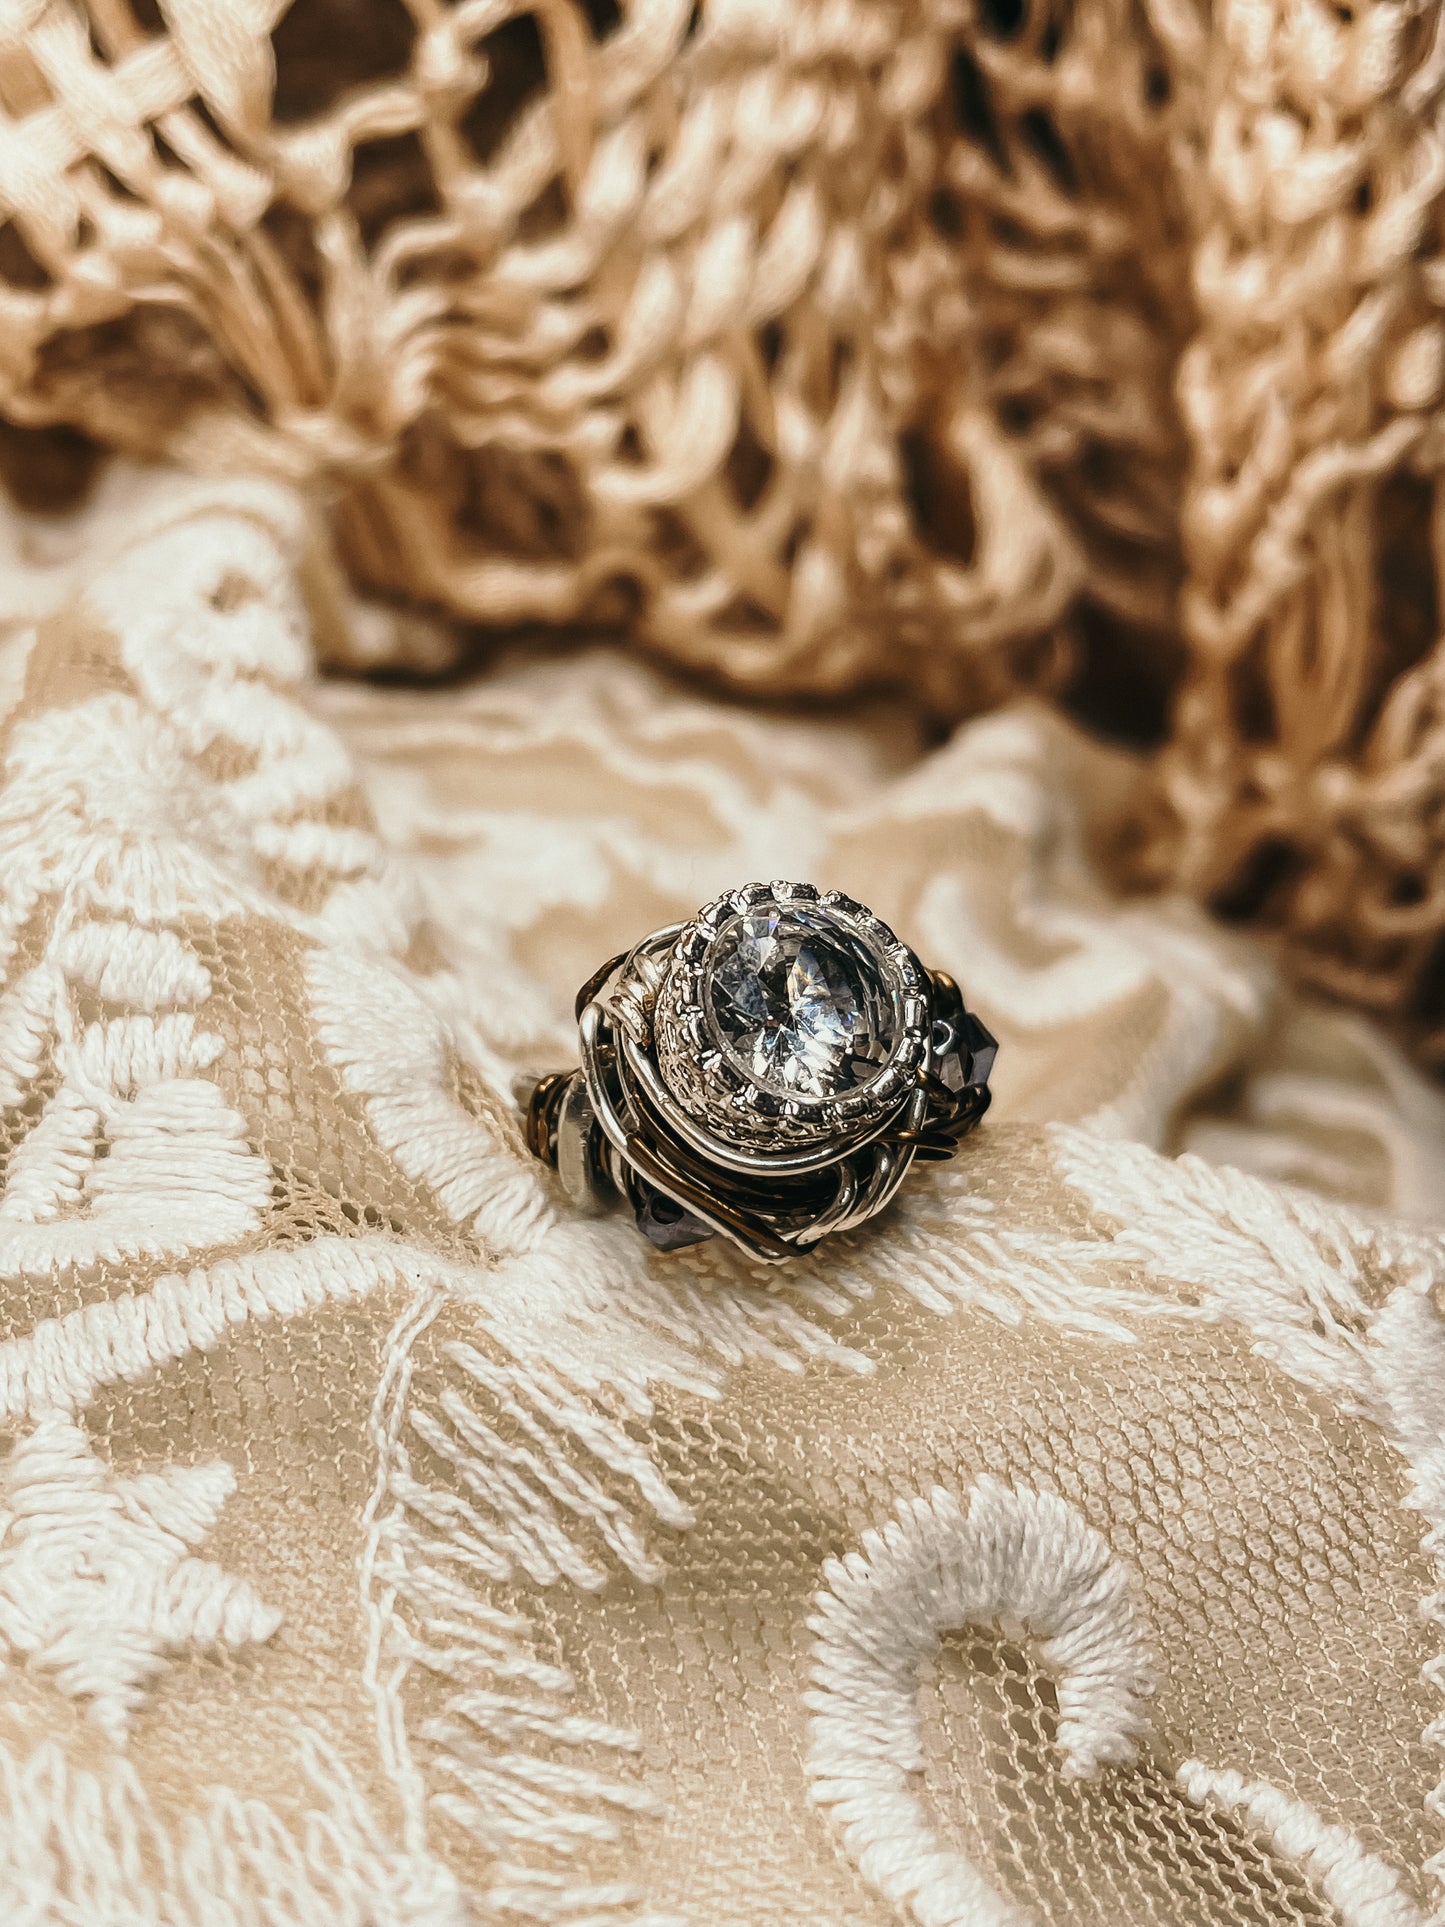 Enchanted unisex ring